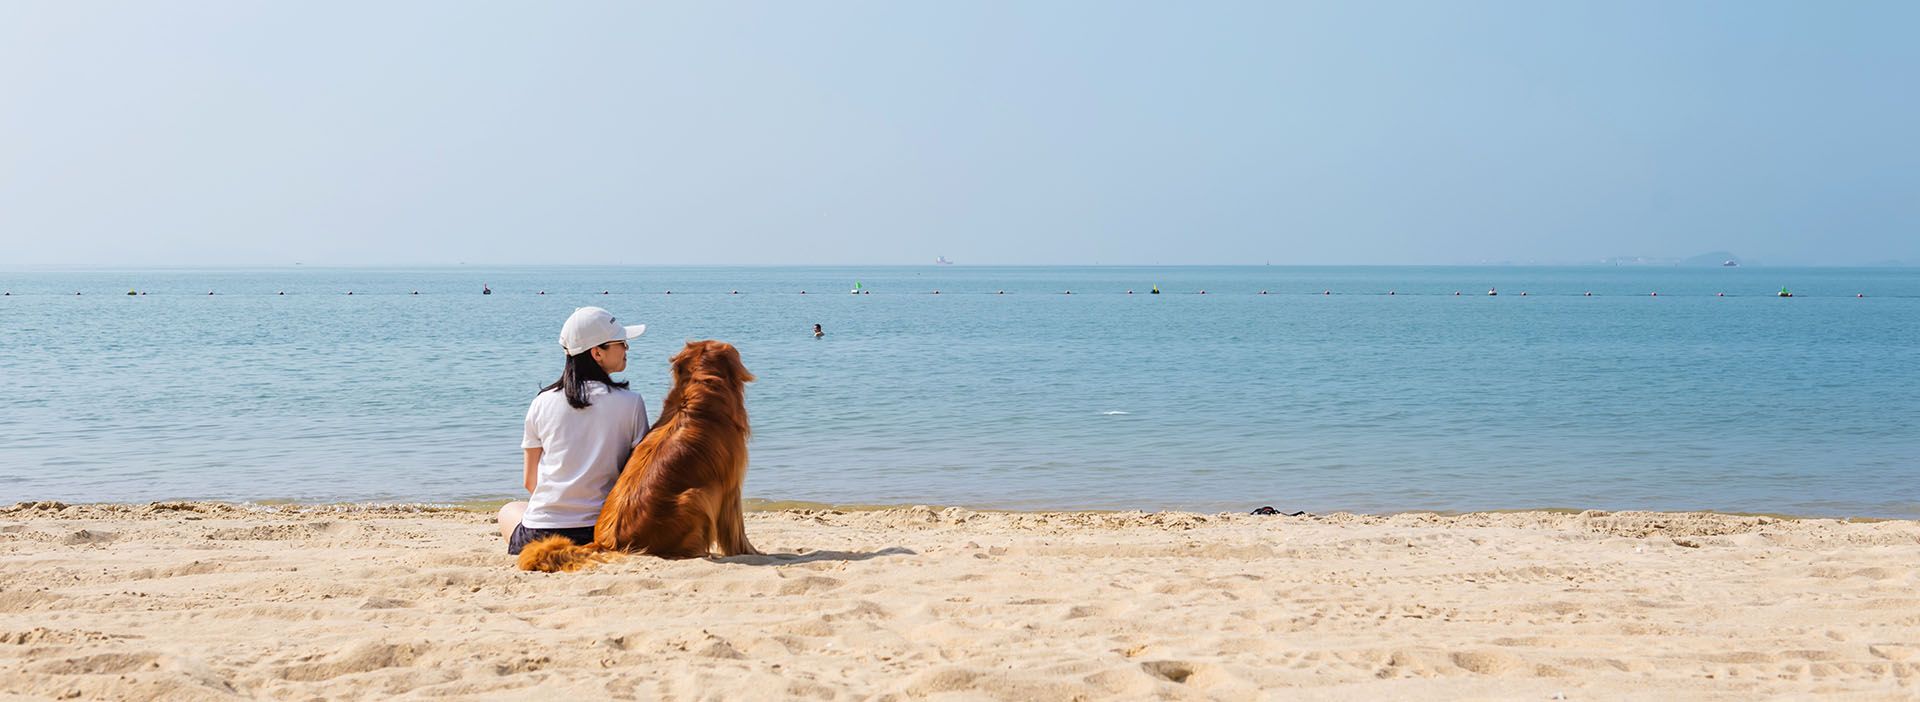 Frau und Hund sitzen am Strand und schauen aufs Meer